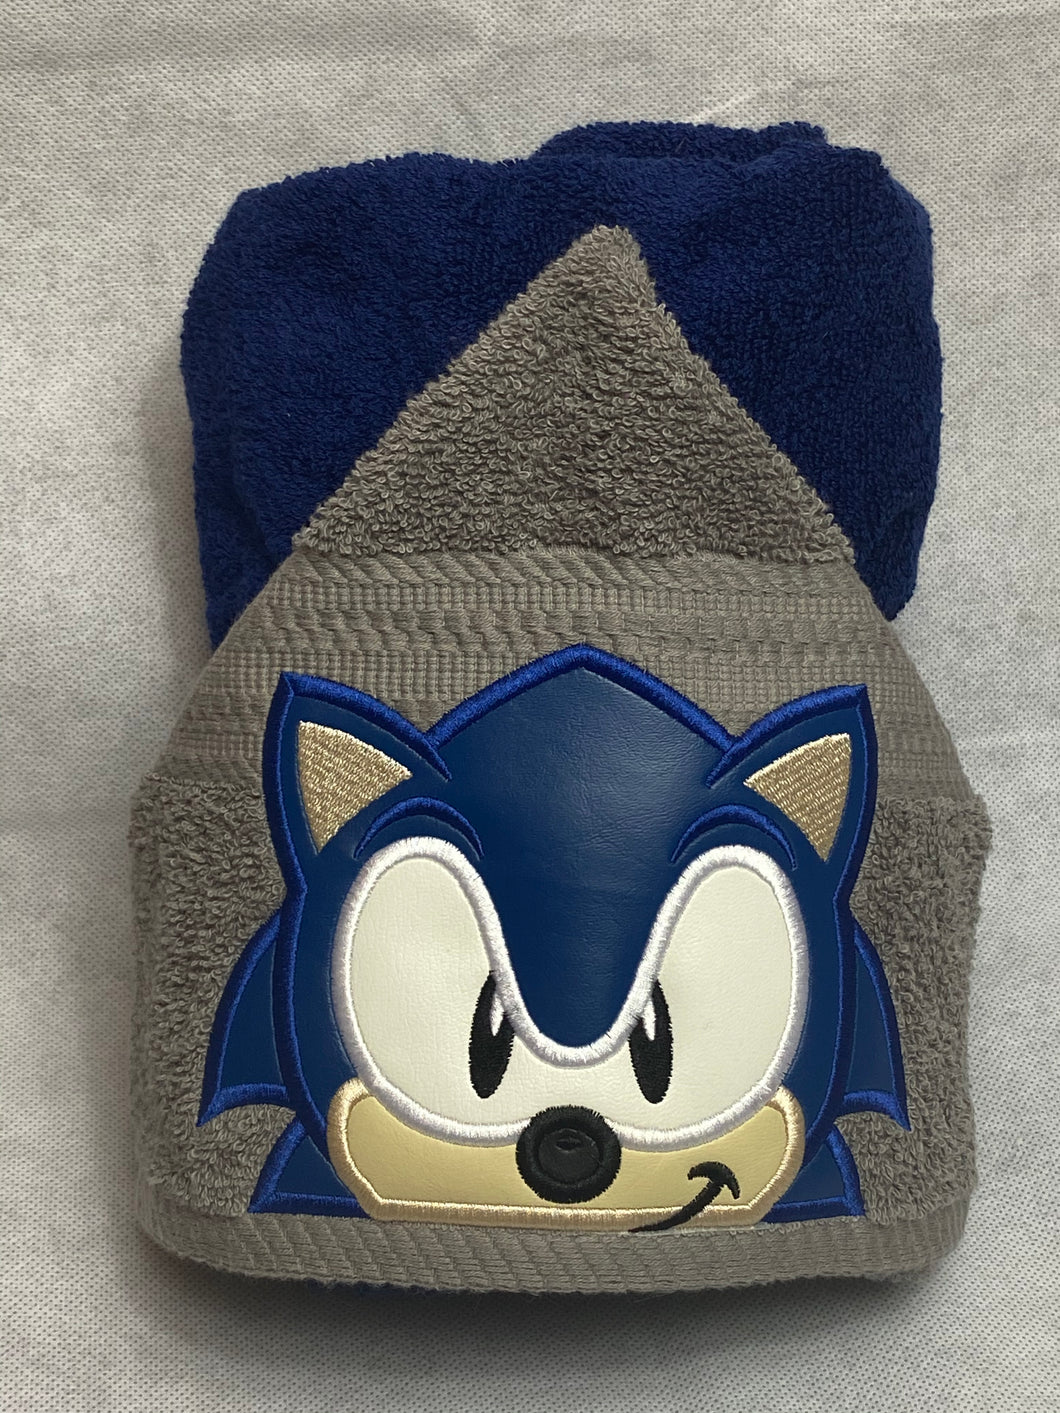 Hedgehog character hooded towel